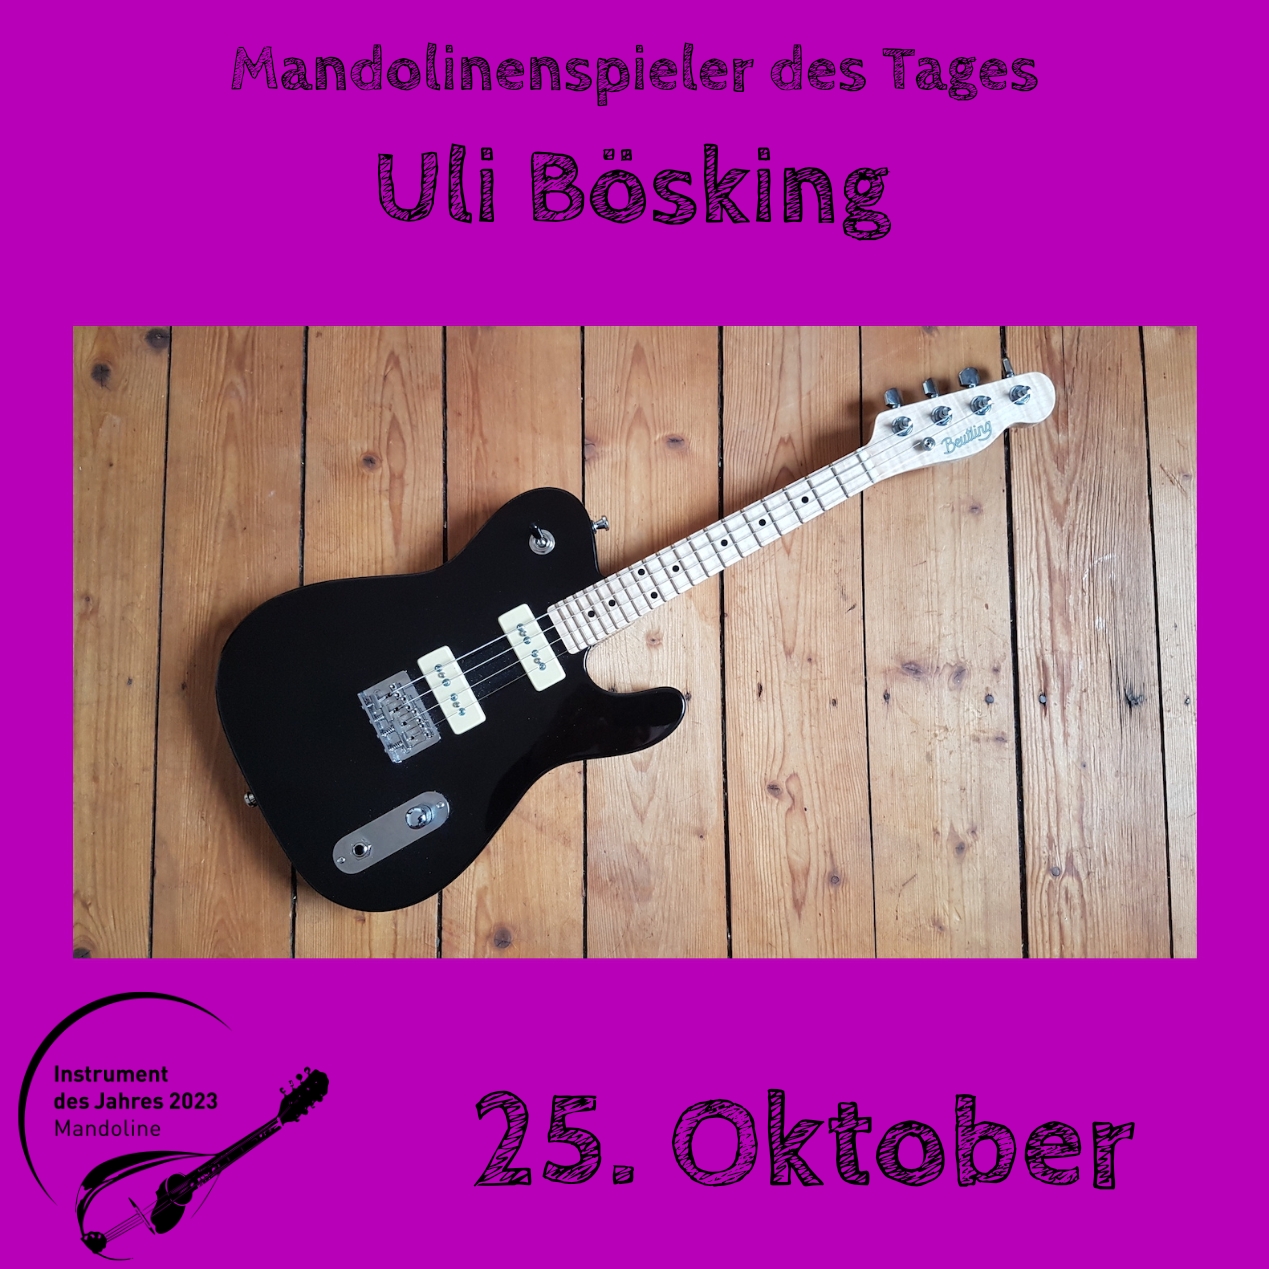 25. Oktober - Uli Bösking Instrument des Jahres 2023 Mandolinenspieler Mandolinenspielerin des Tages